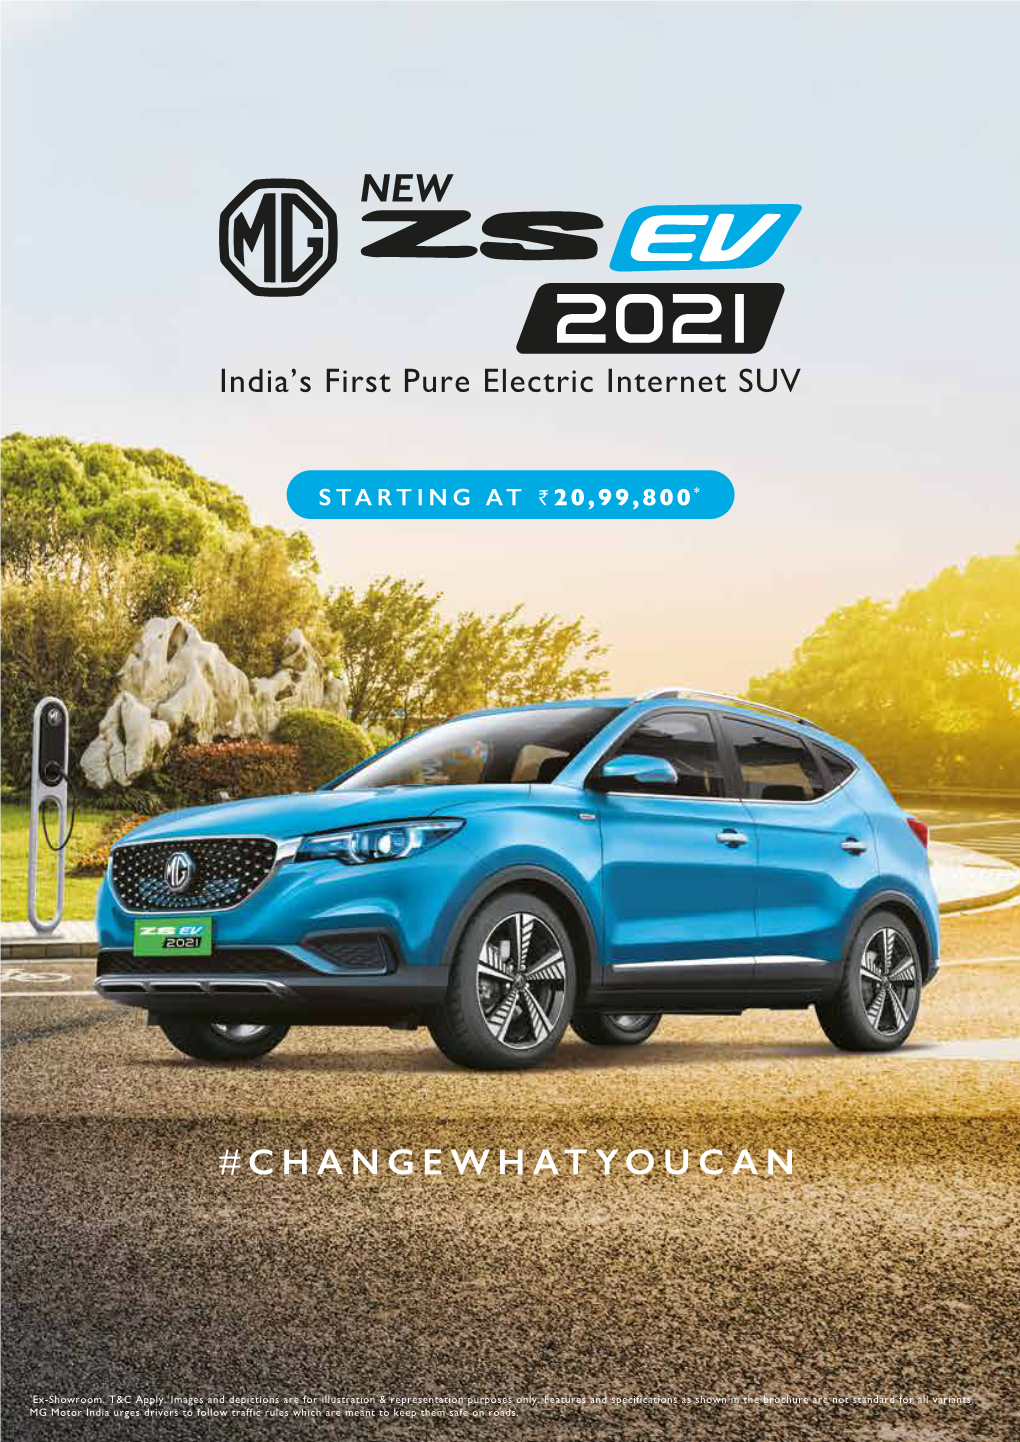 7340 ZS EV 2021 Digital Brochure A4